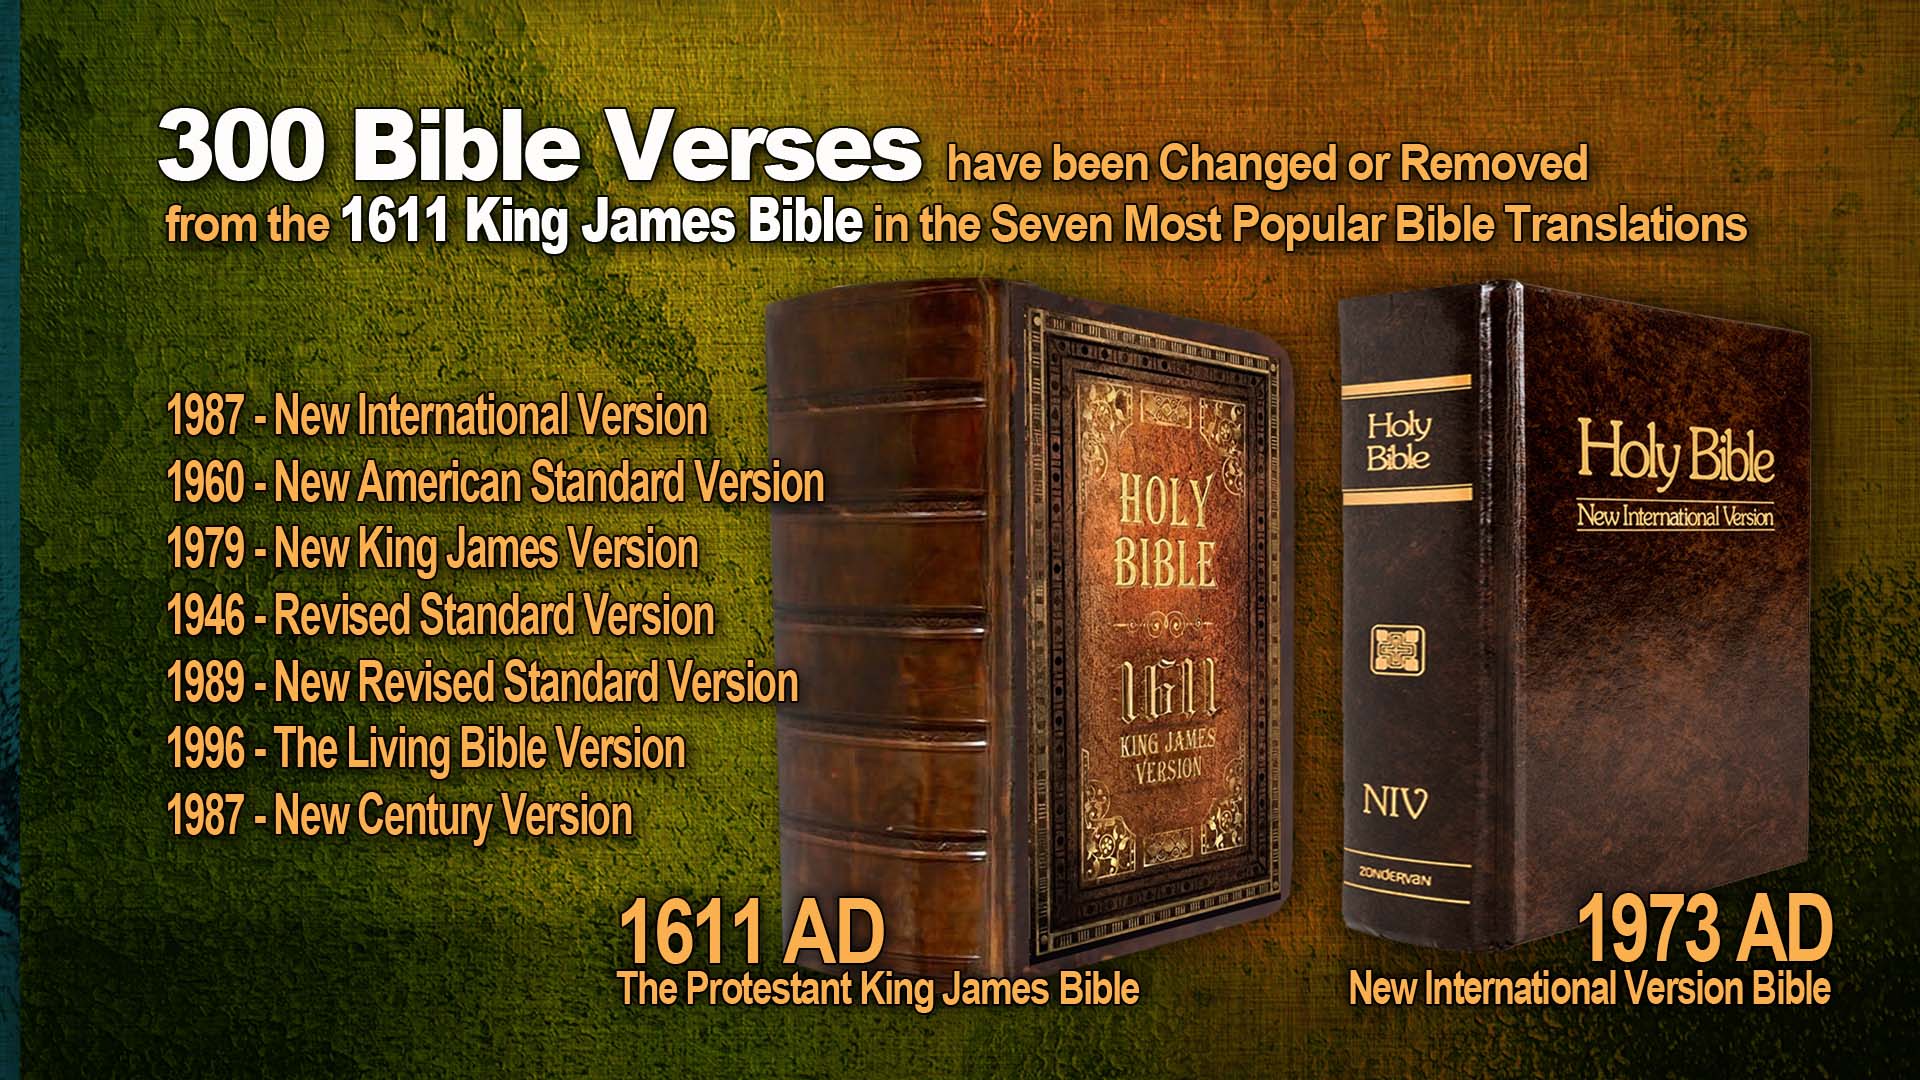 NIV Bibles